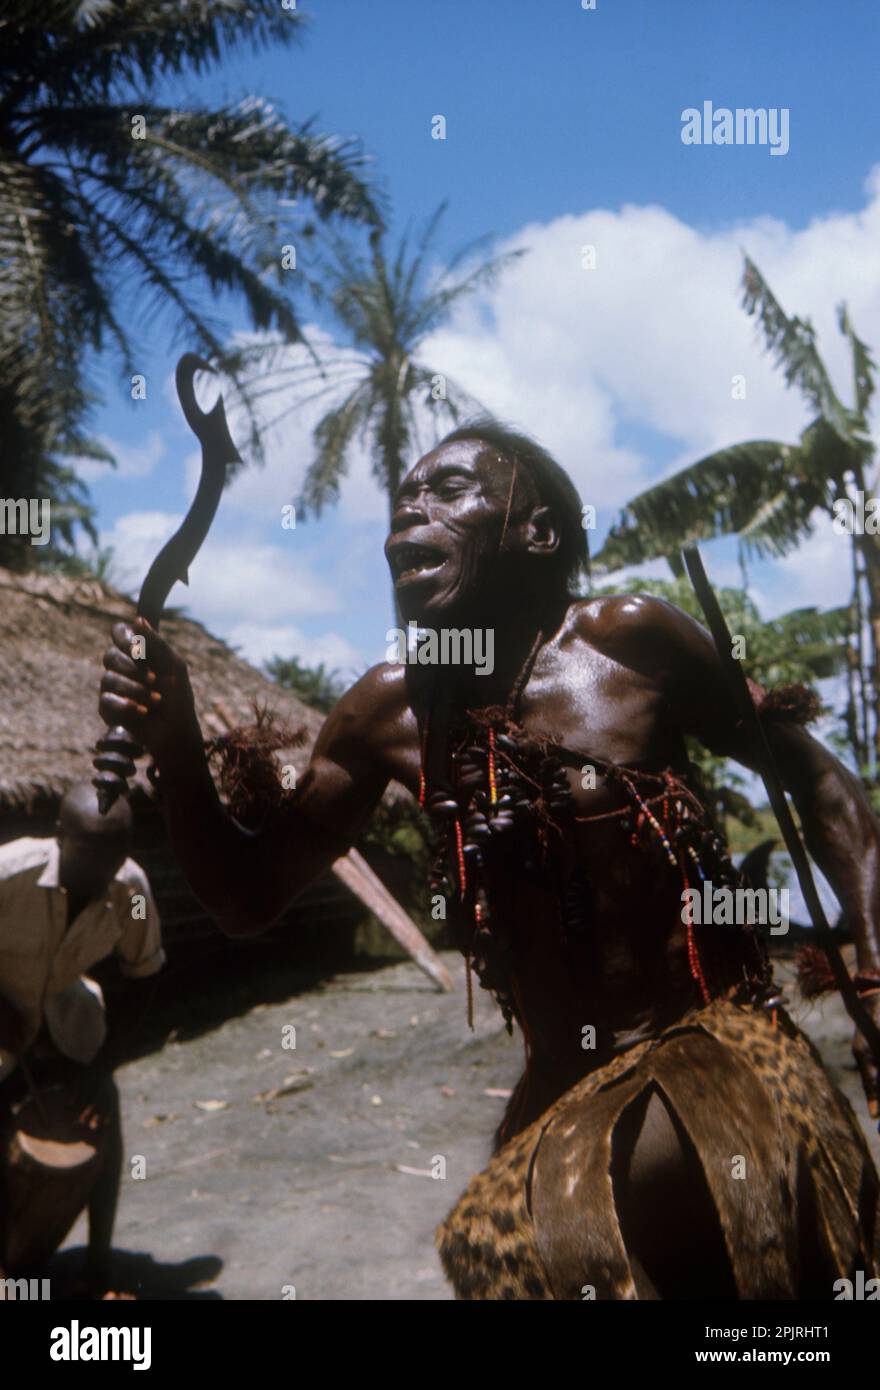 Afrika, Demokratische Republik Kongo, Ngiri-Gebiet. Ethnische Gruppe der Libinza. Diviner tanzt, hält ein zeremonielles Messer. Stockfoto